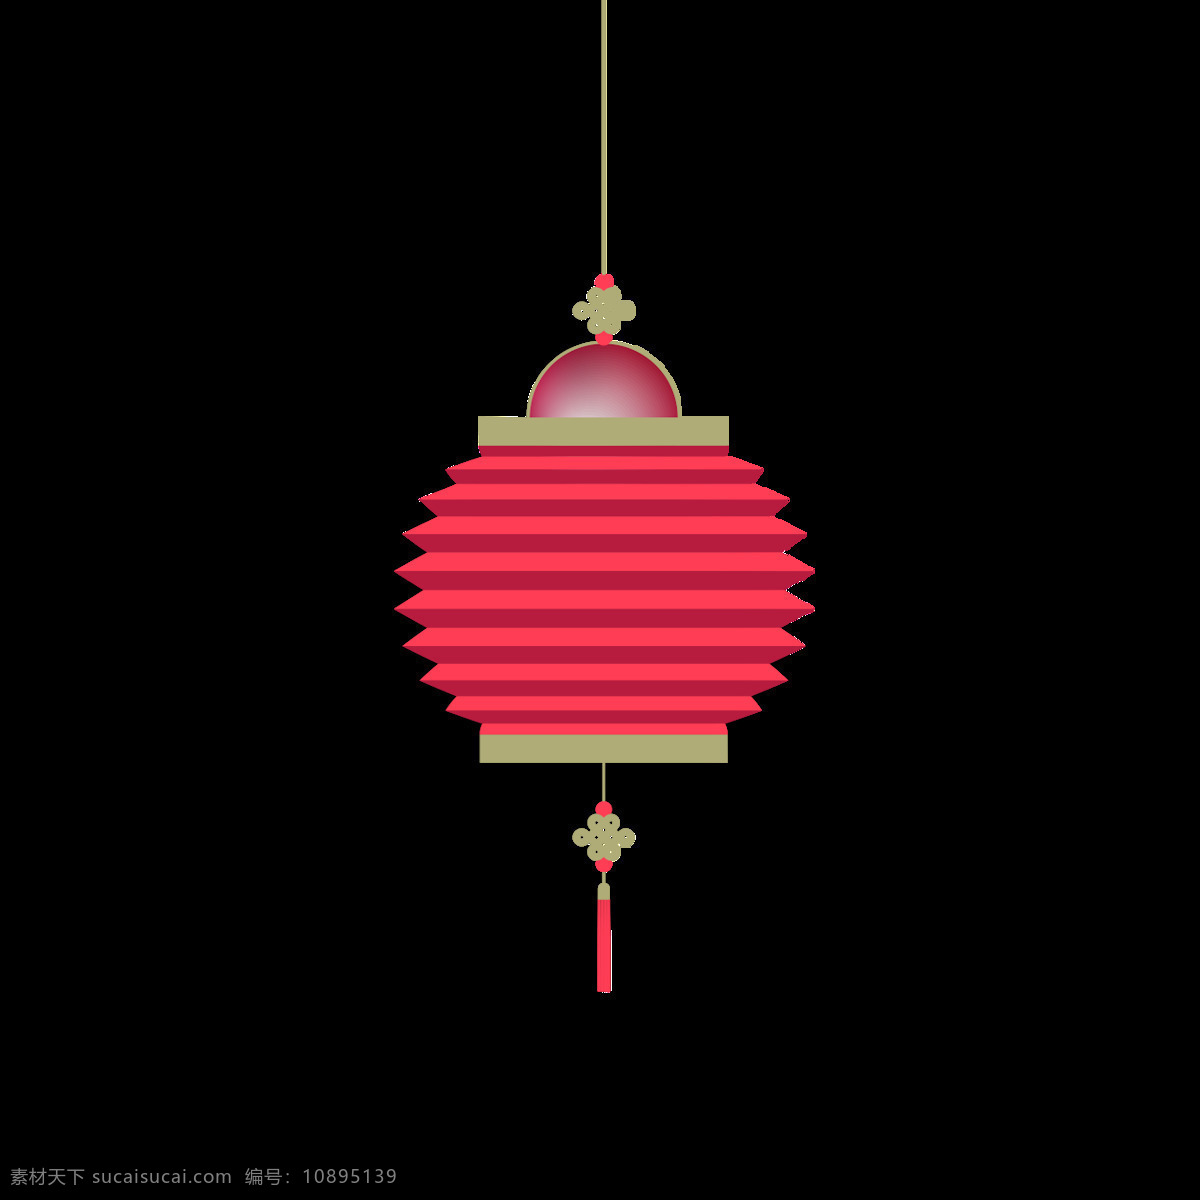 粉色 中国结 灯笼 元素 灯笼串 灯笼模板 灯笼素材 古典灯笼 花边灯笼 花灯 双灯笼 圆形灯笼 祝福